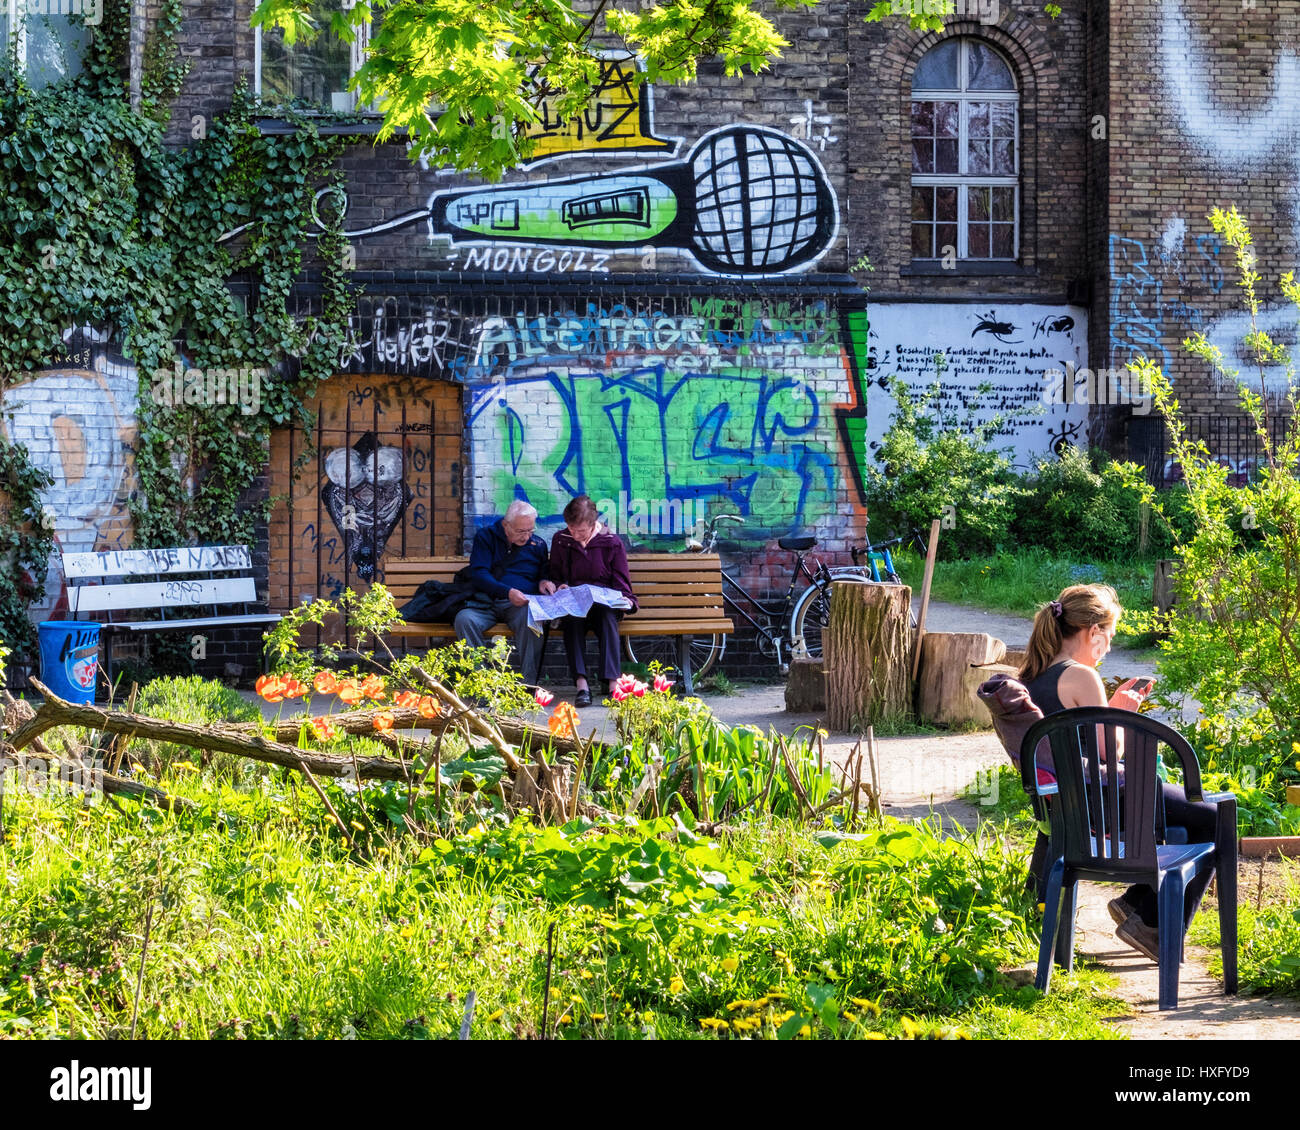 Berlino Kreuzberg. Il ton Steine giardino, comunità comunale giardinaggio urbano accanto alla Georg von Rauch House.persone sedersi in giardino di quartiere. Foto Stock